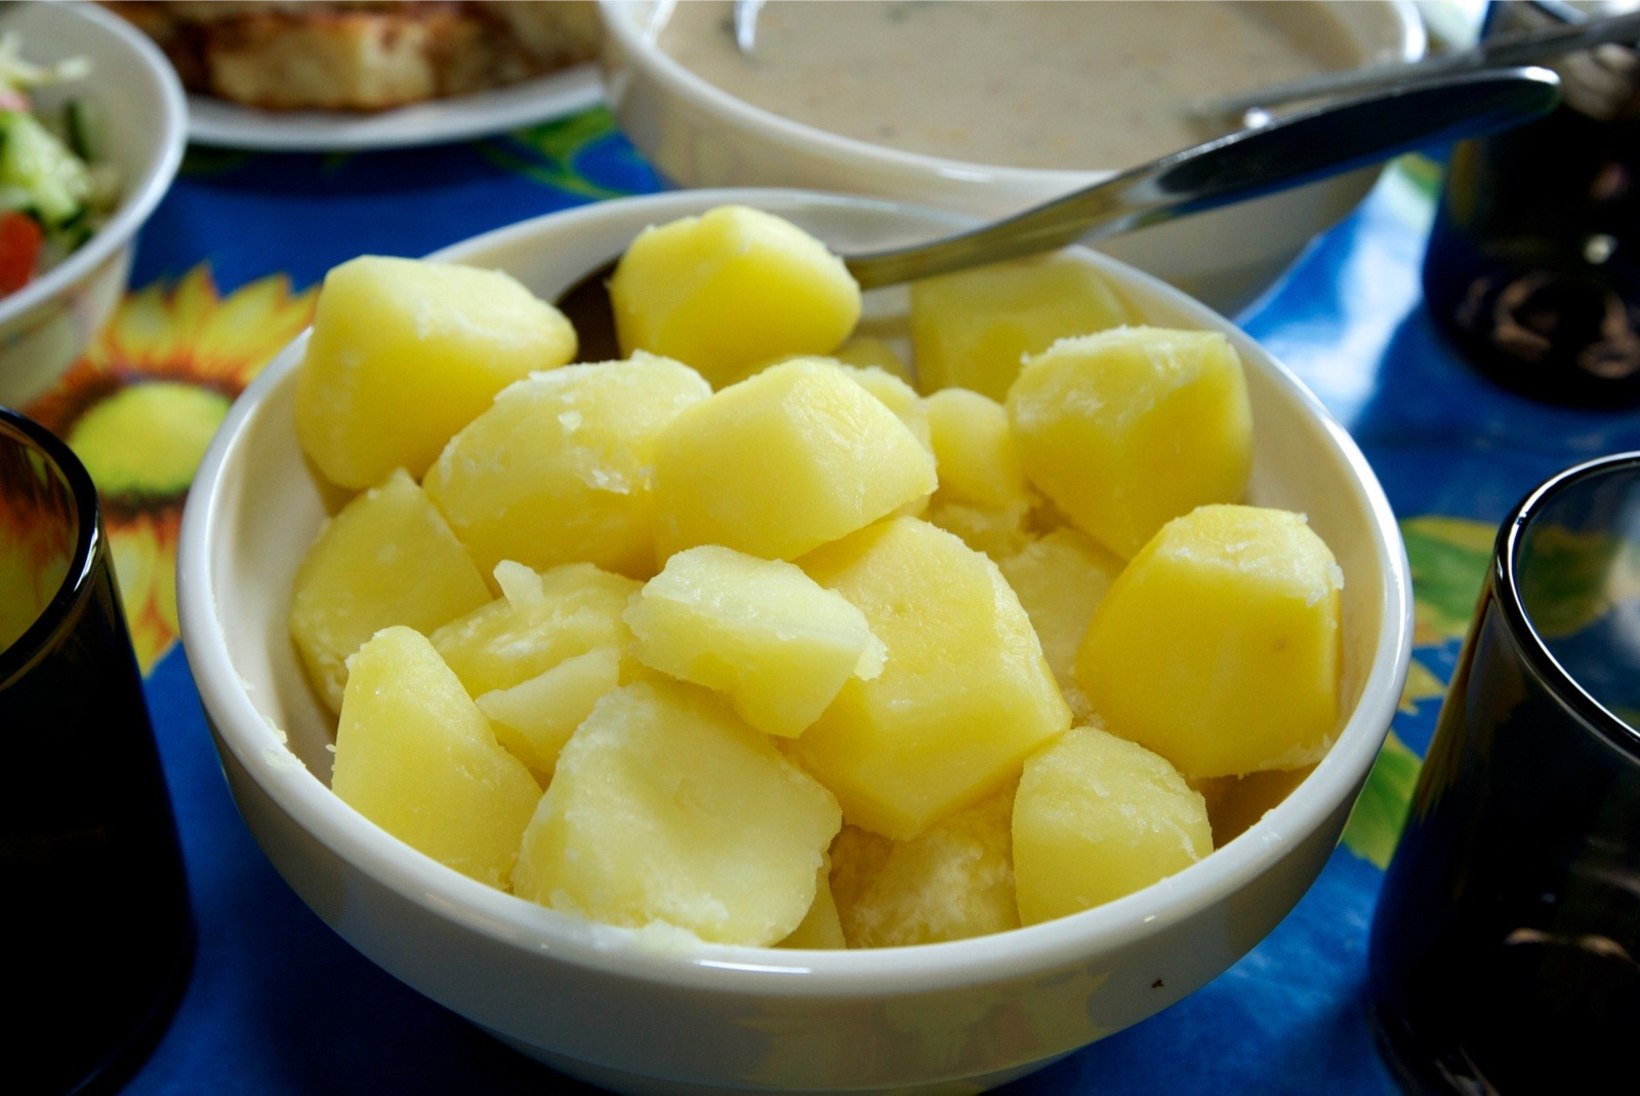 ÕL VIDEO: Kuidas maitseb kartulimarmelaad? Milline kartulisort kuhu sobib?   